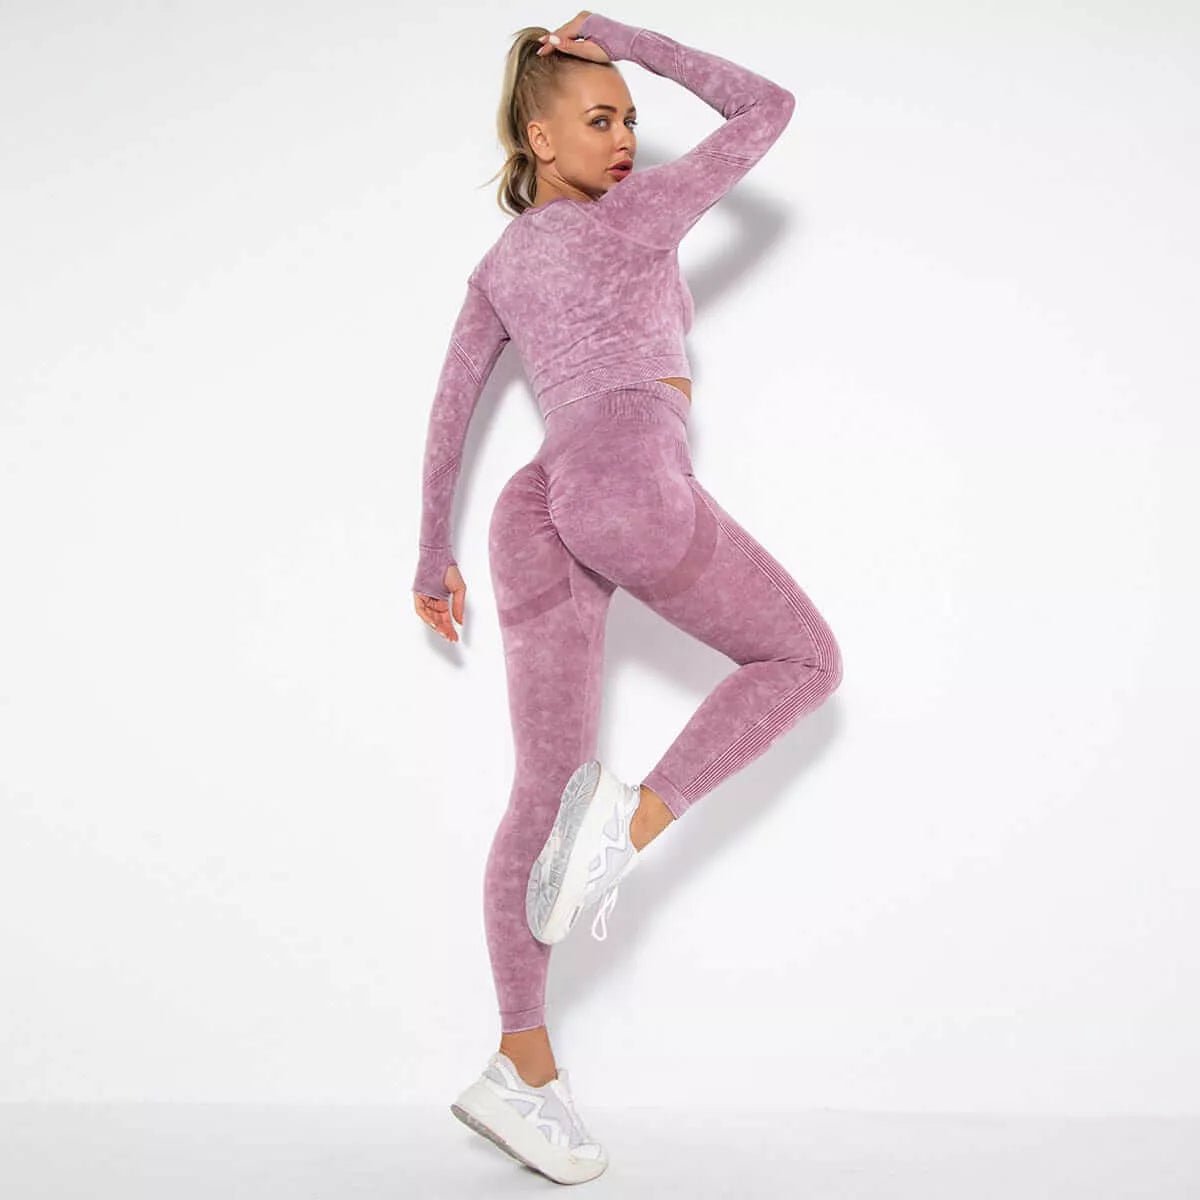 Peach Hip Raise Yoga Workout Outfit - London's Closet Boutique